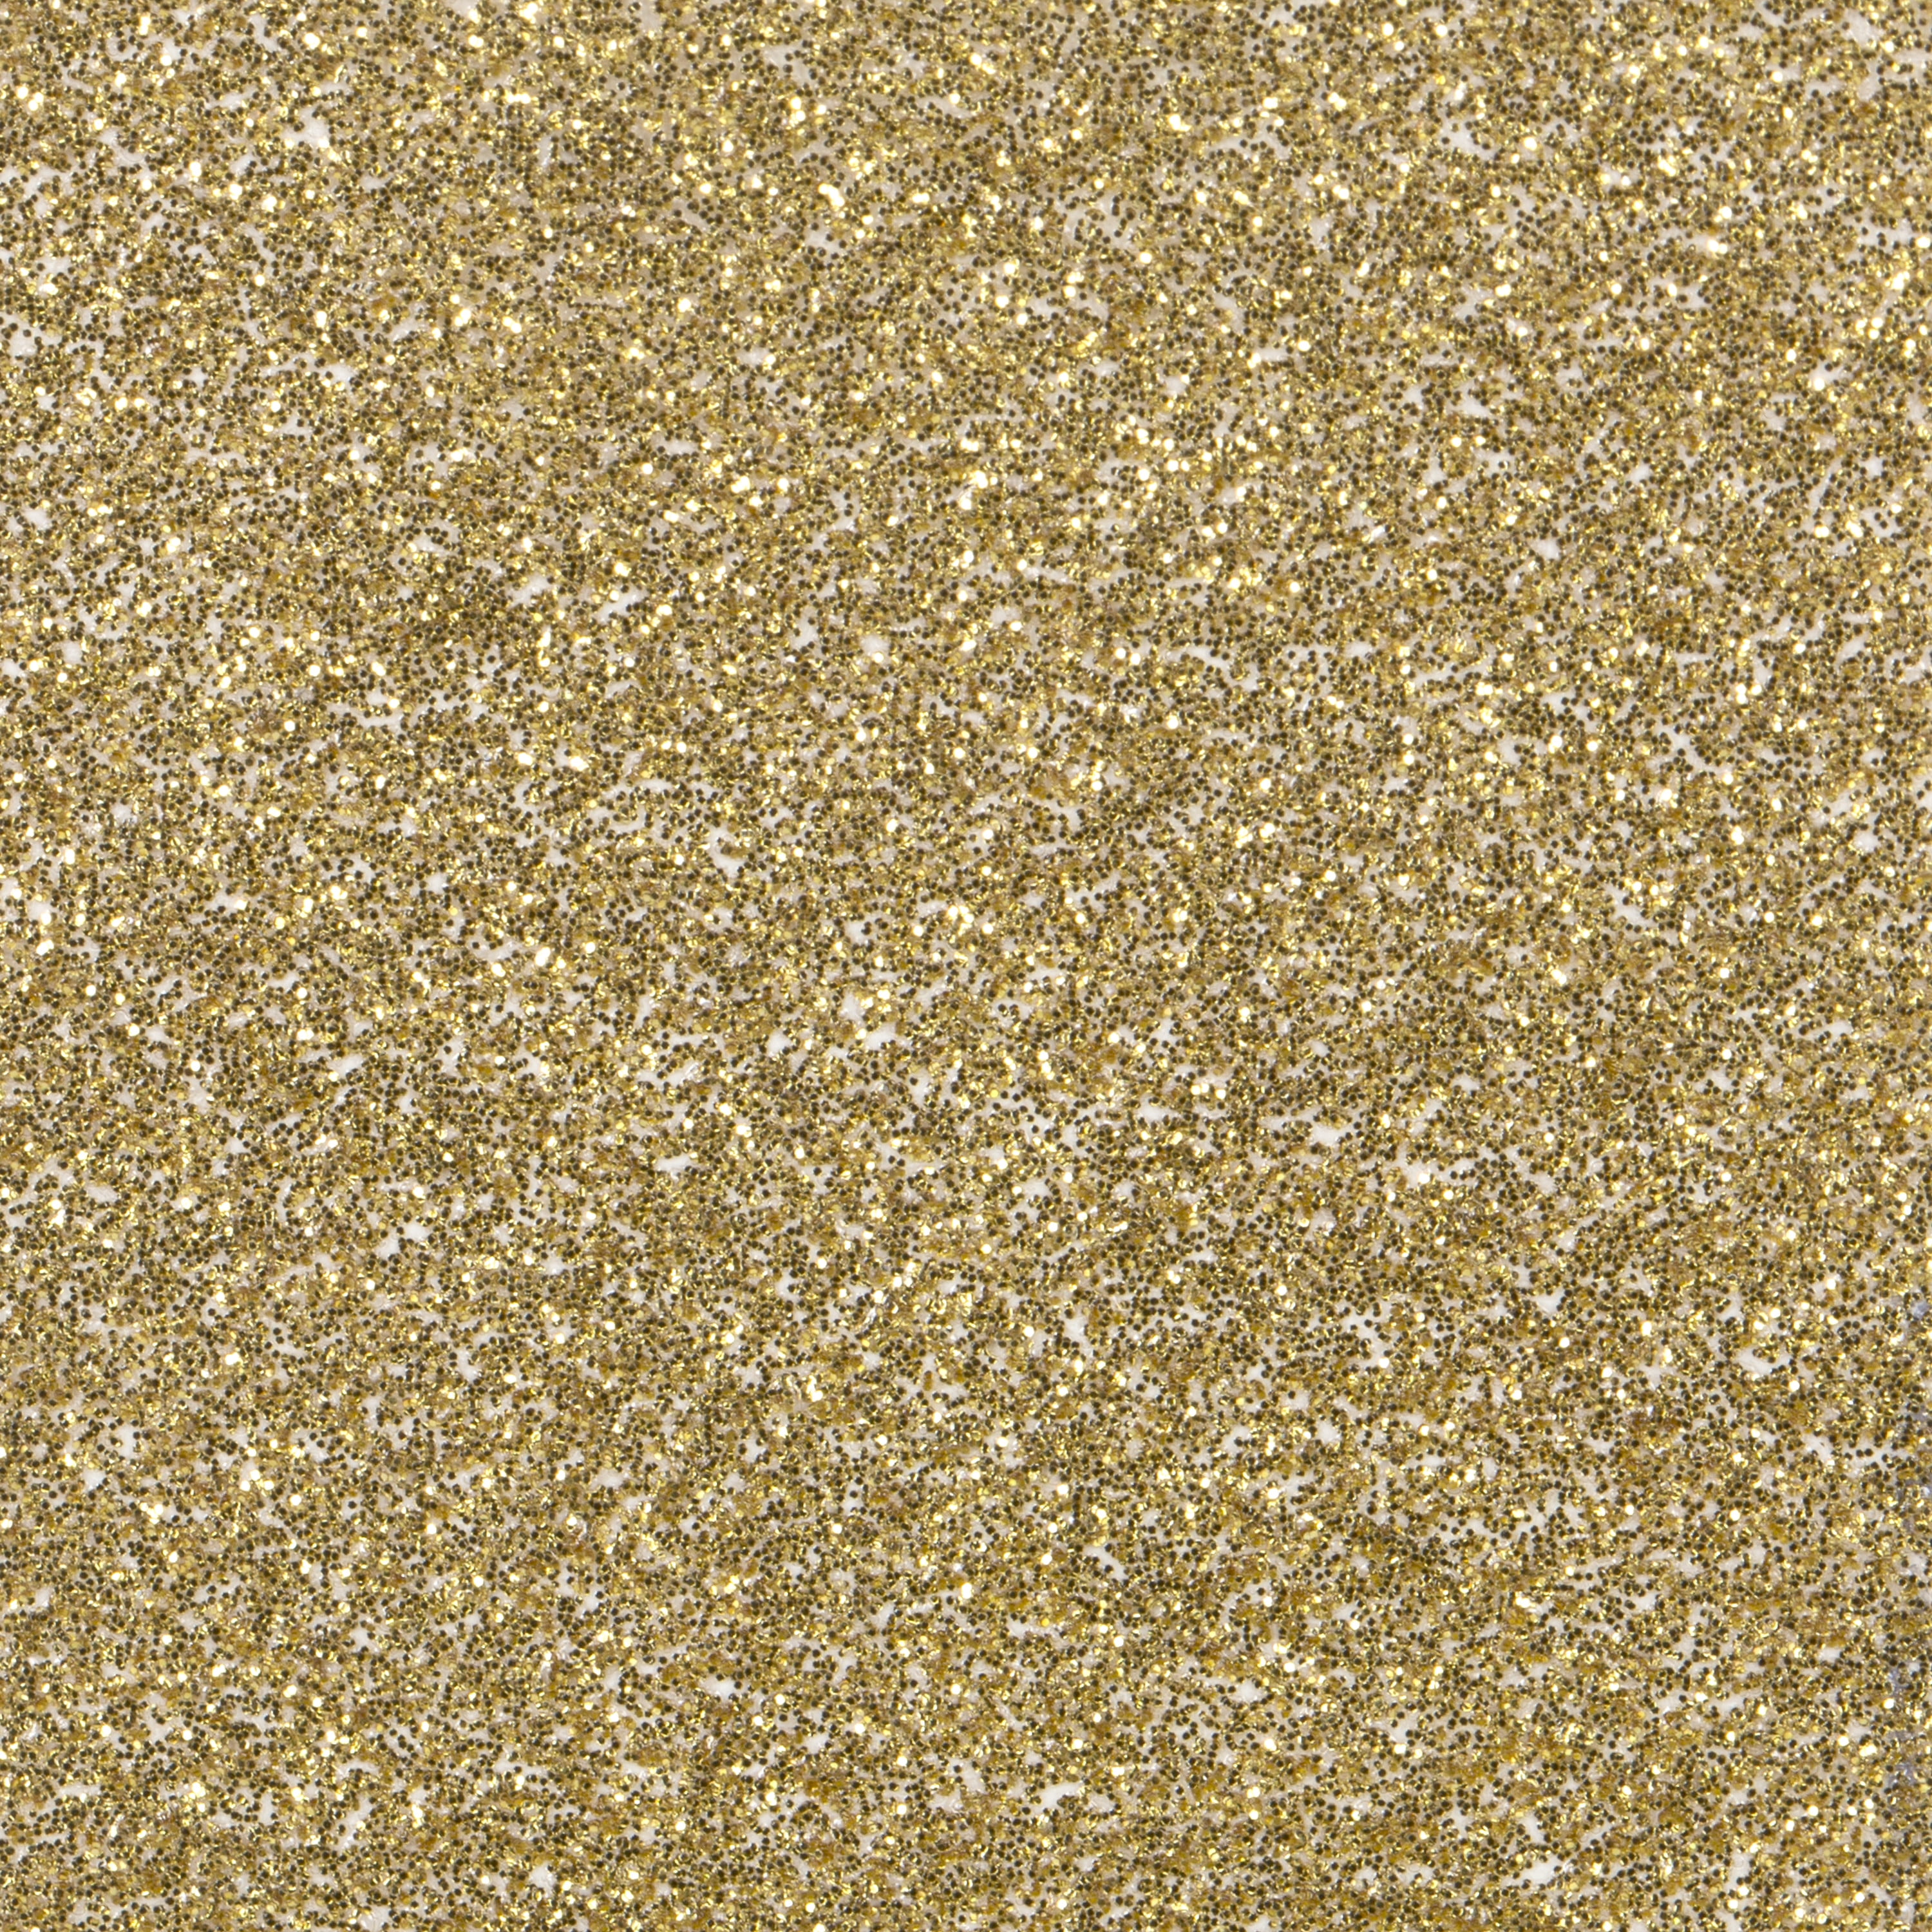  Teemico 5 Rolls Gold Glitter Tape, 55 Yard Glitter